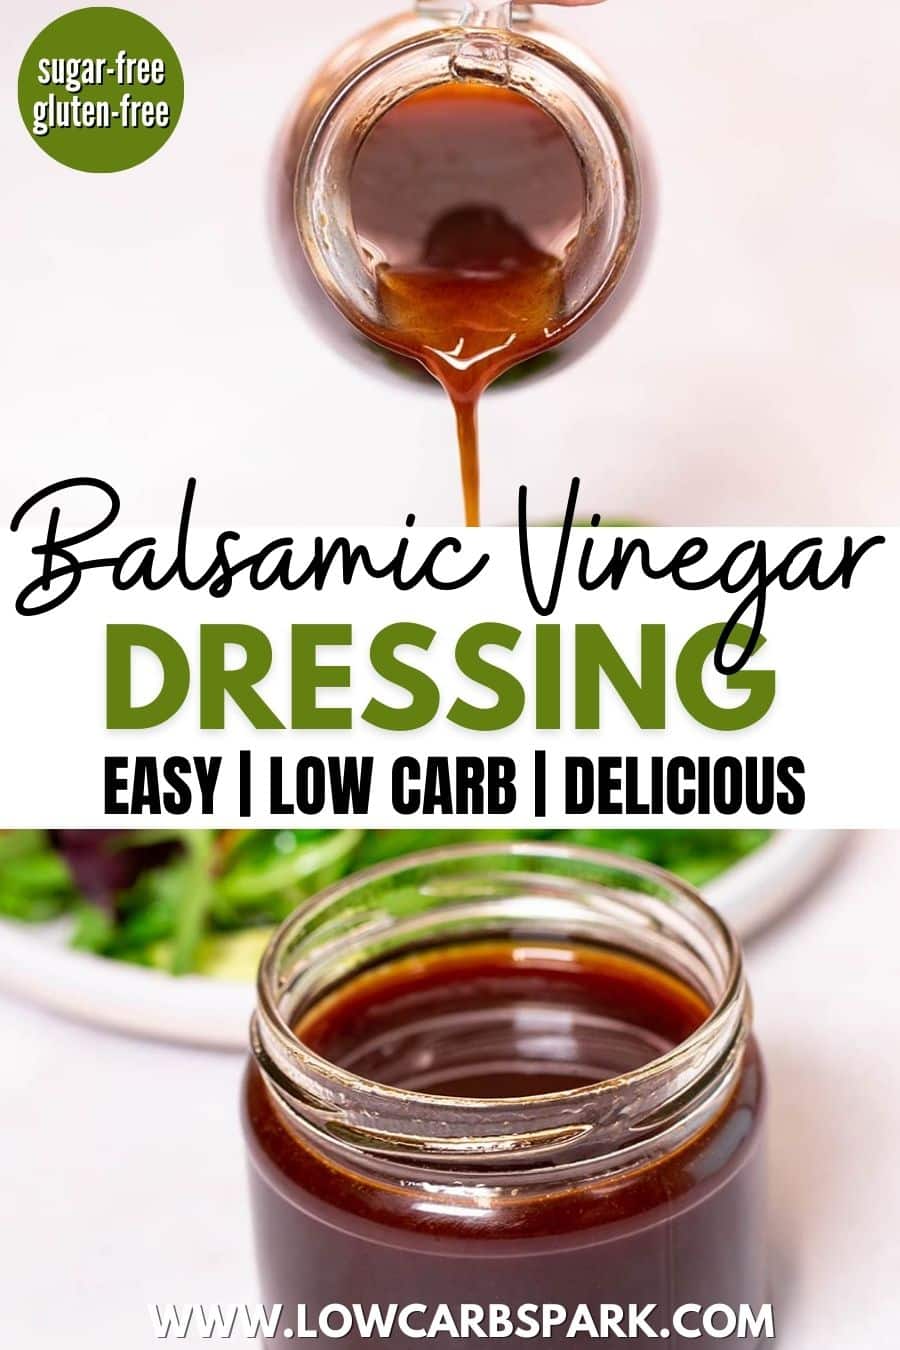 Balsamic Vinegar Dressing